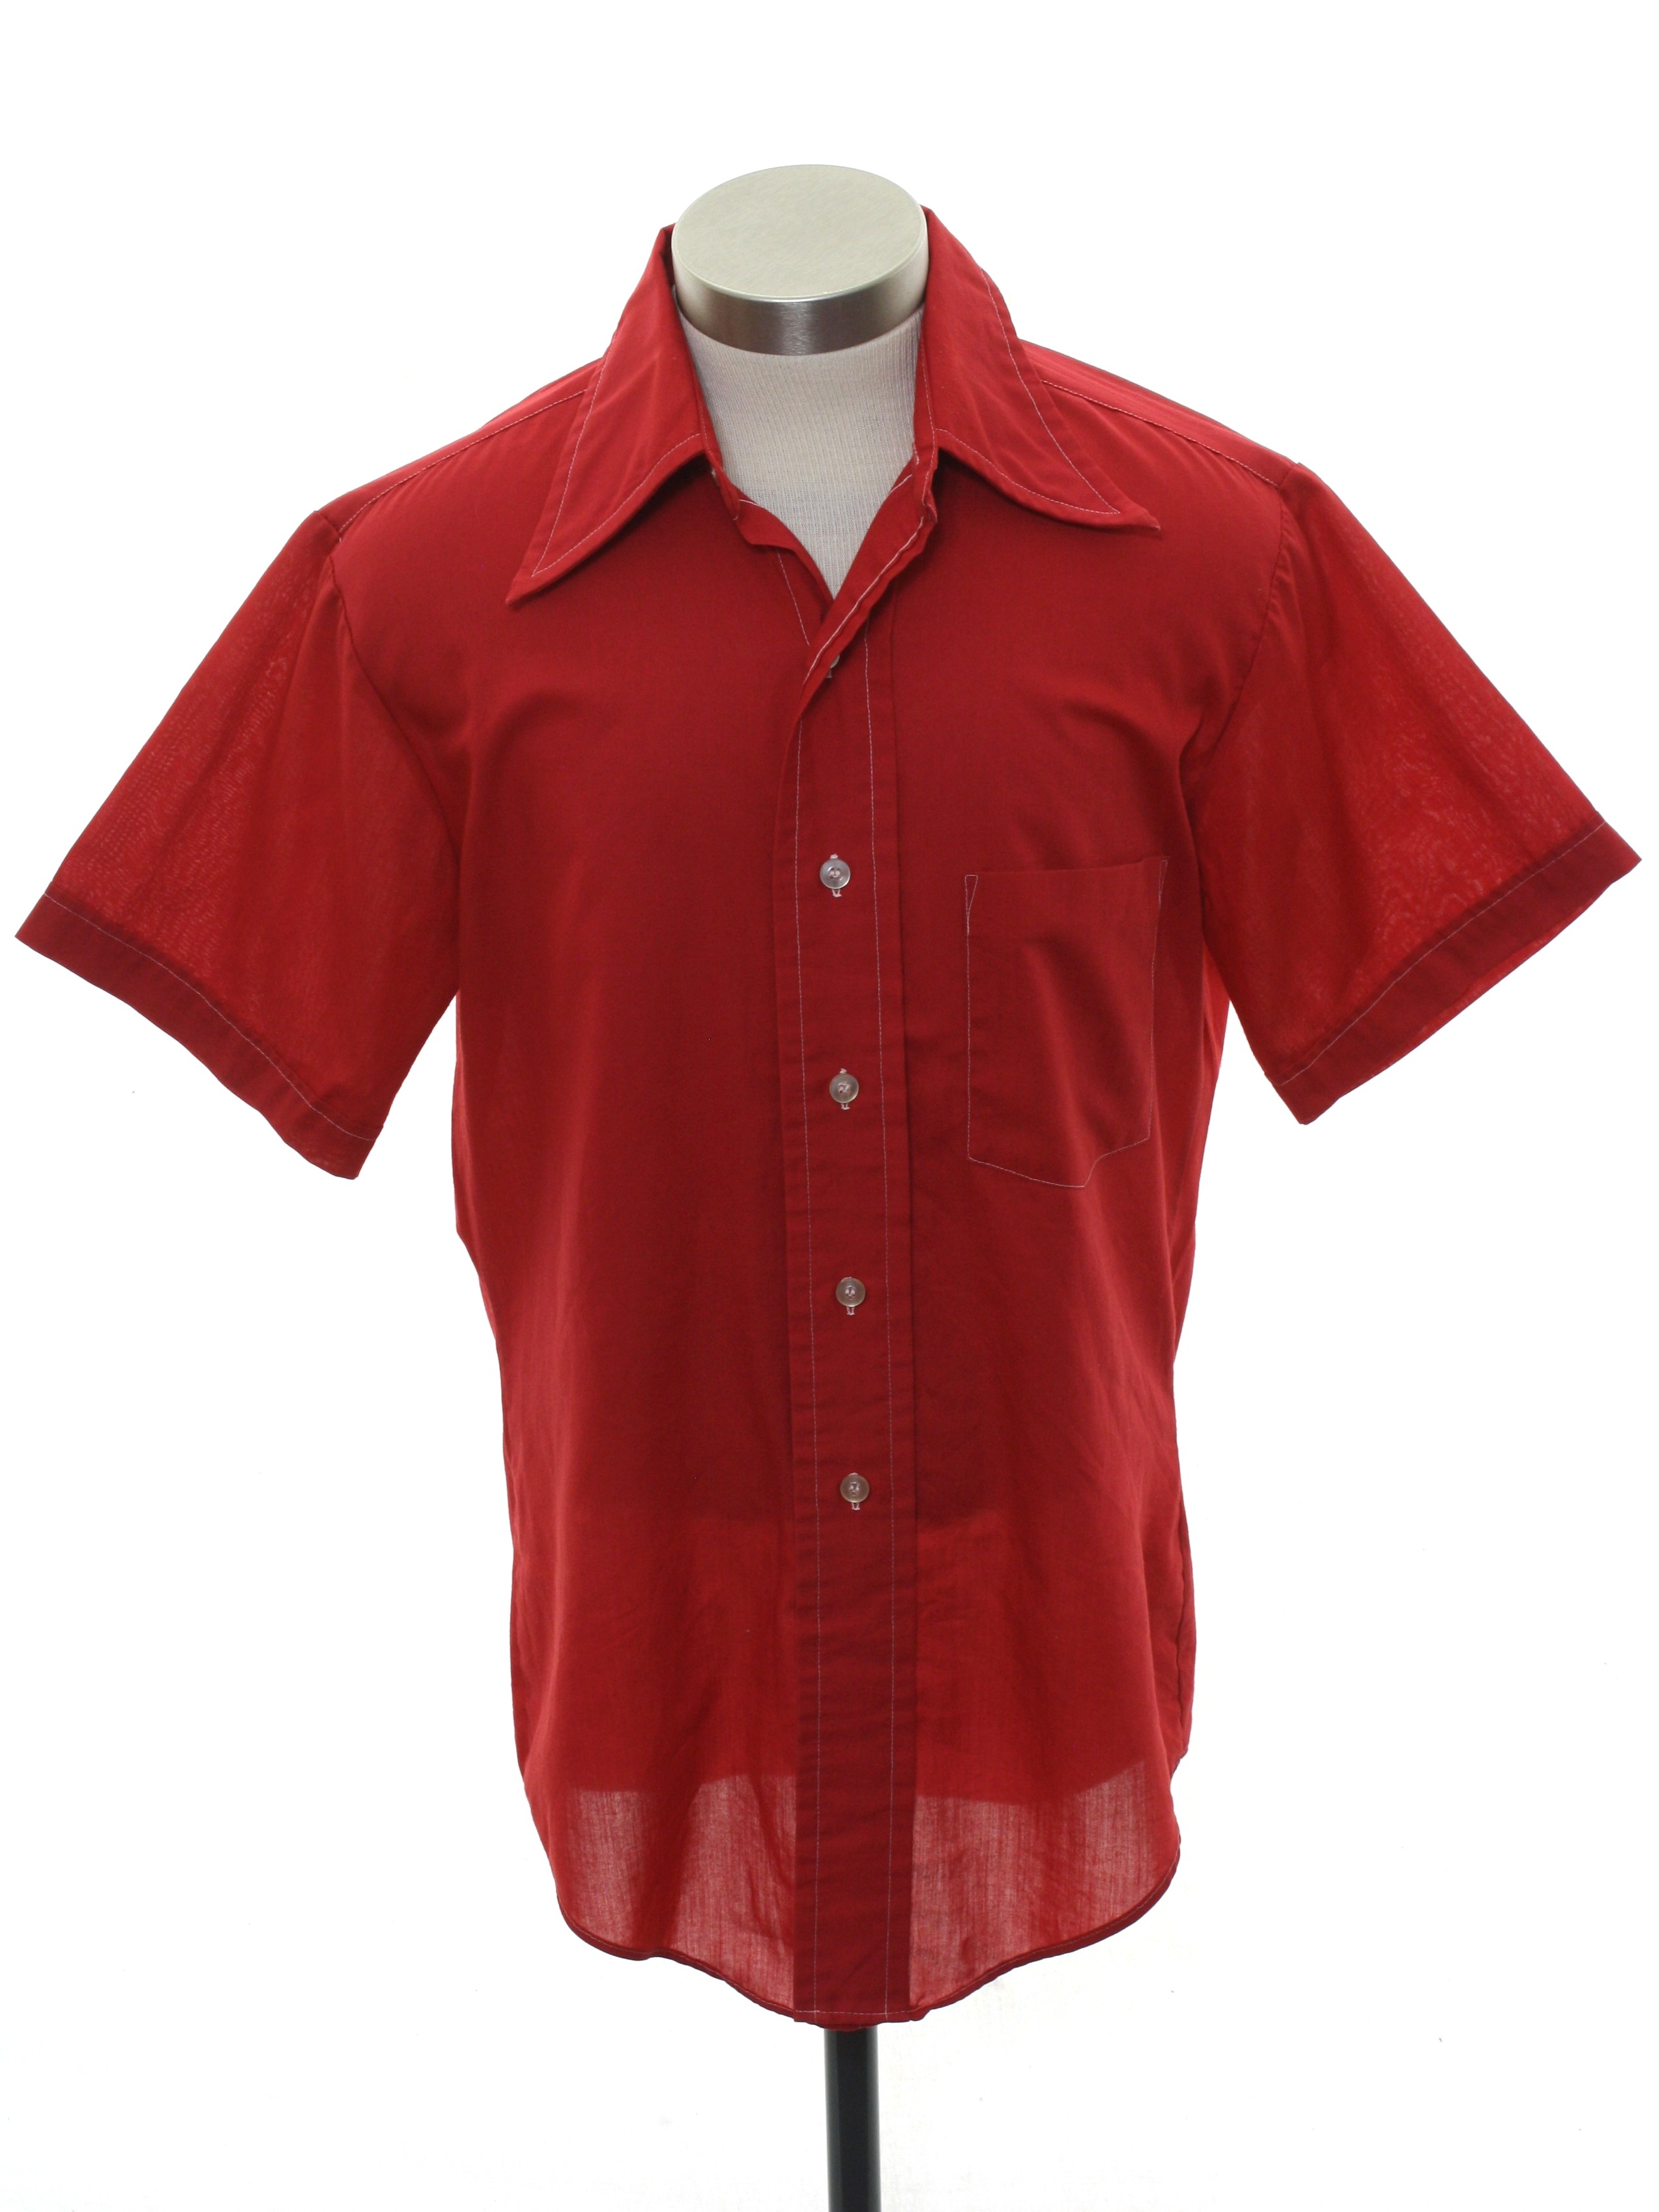 red silk button up shirt mens